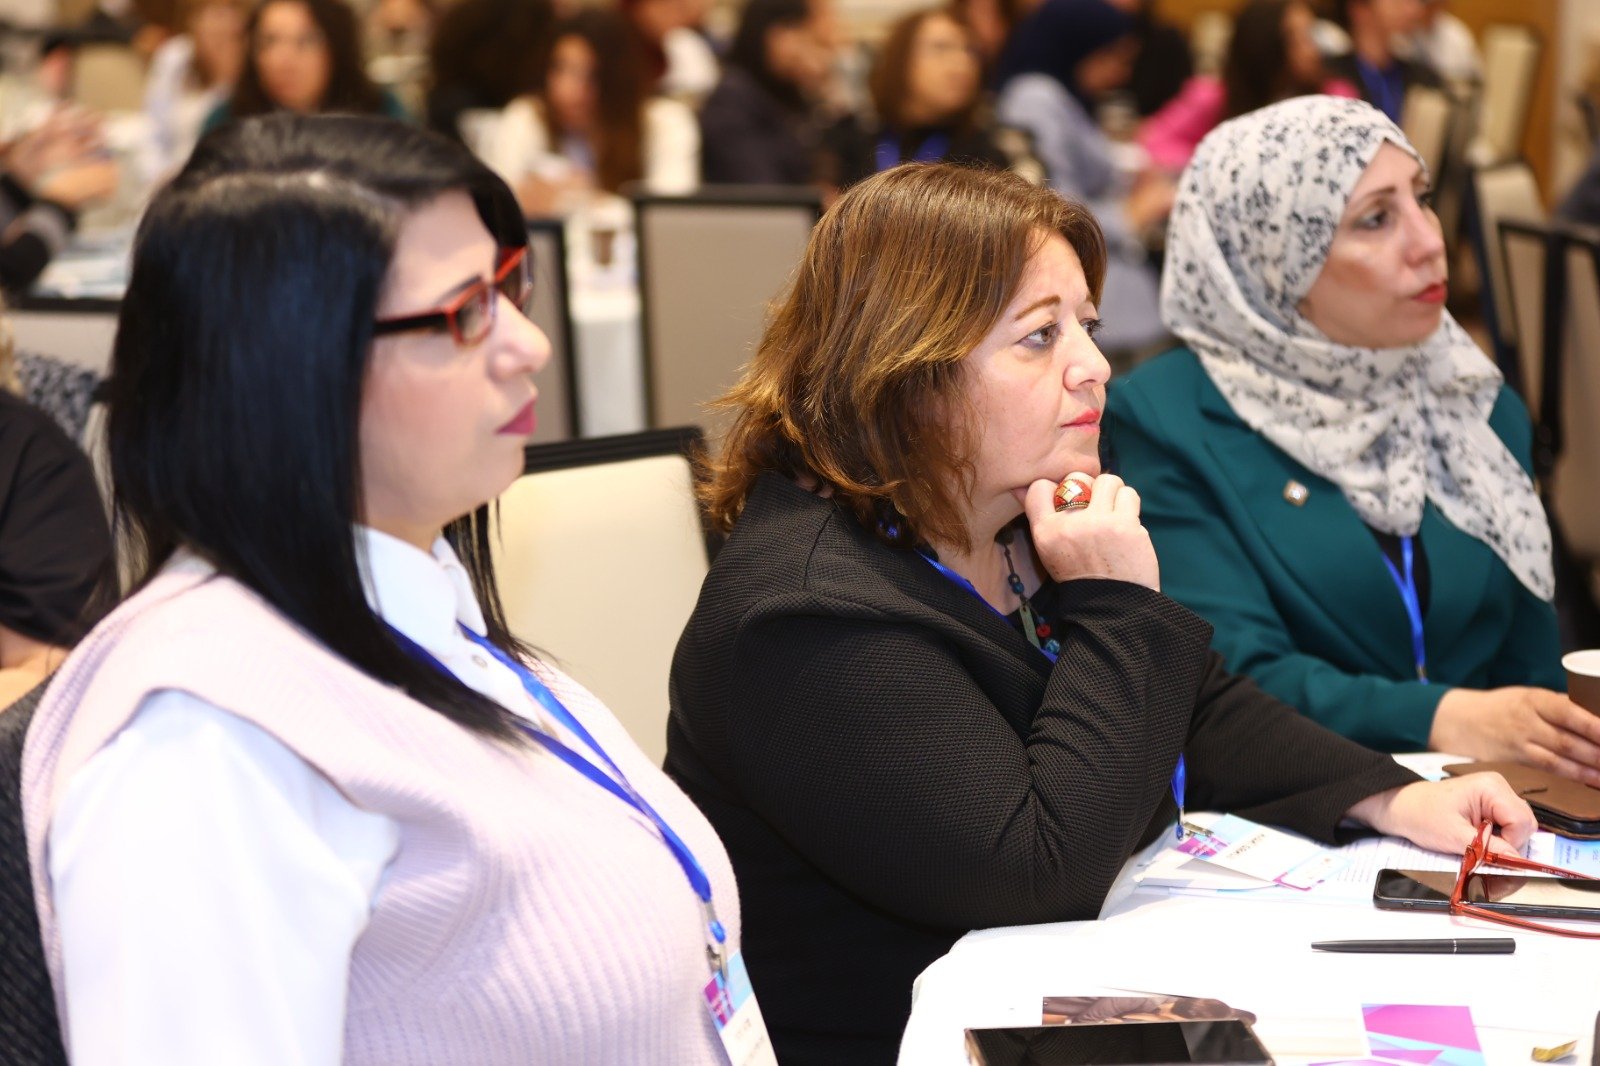 المؤتمر النسائي الأضخم والأول من نوعه بمبادرة "بكرا" .. تلخيصات وتوصيات هامة في مختلف المجالات-64